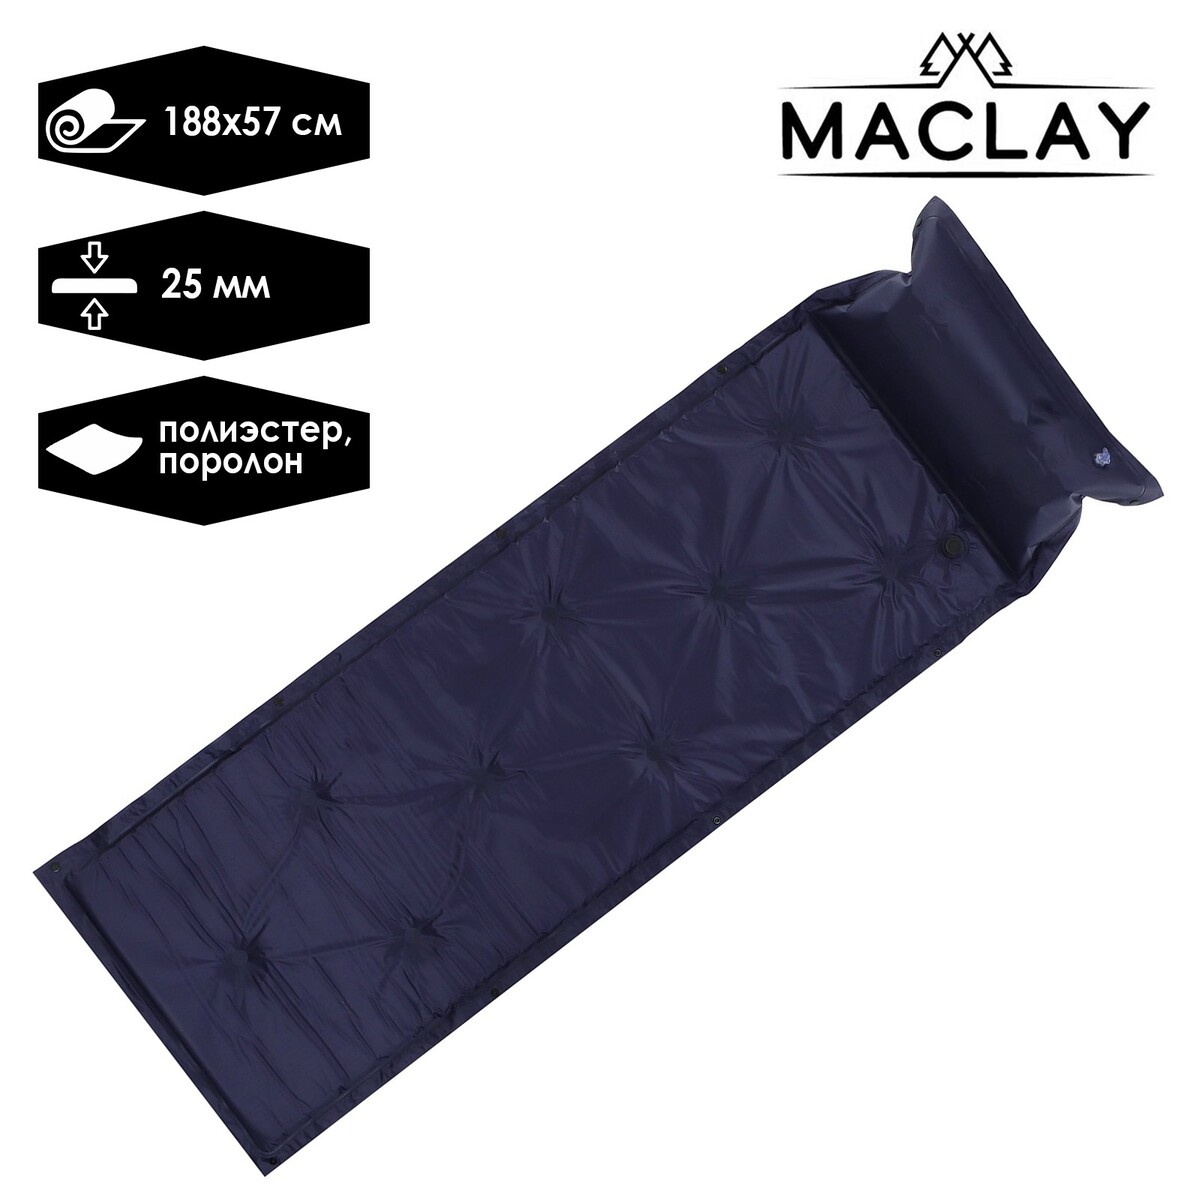 Коврик туристический maclay, 188х57х2.5 см, цвет синий коврик гимнастический body form 183x61x1 0 см bf ym05 синий